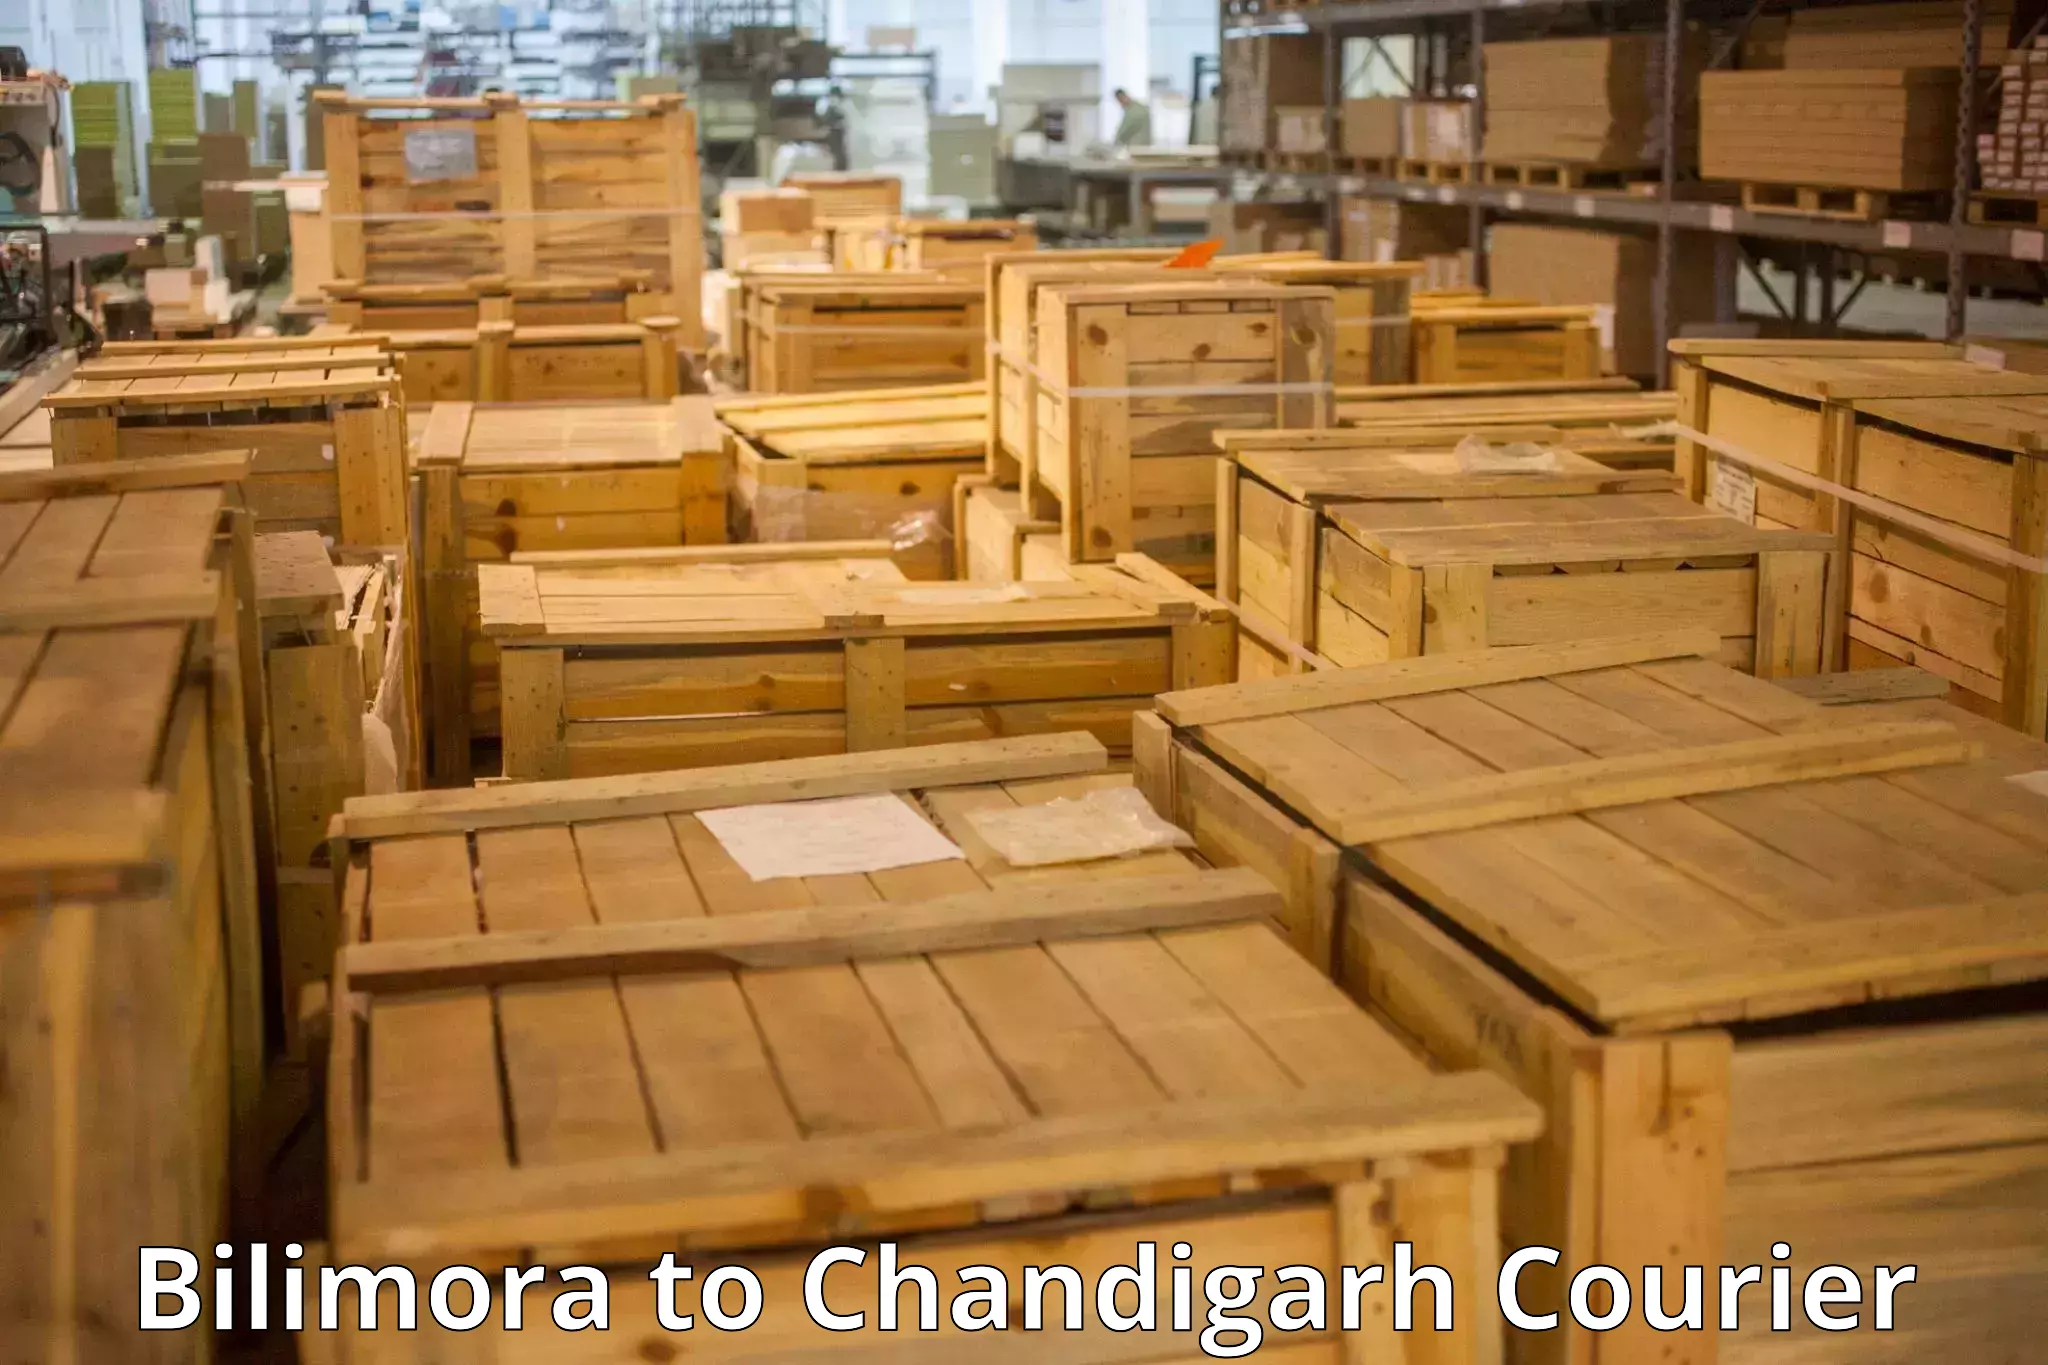 Baggage delivery estimate Bilimora to Chandigarh